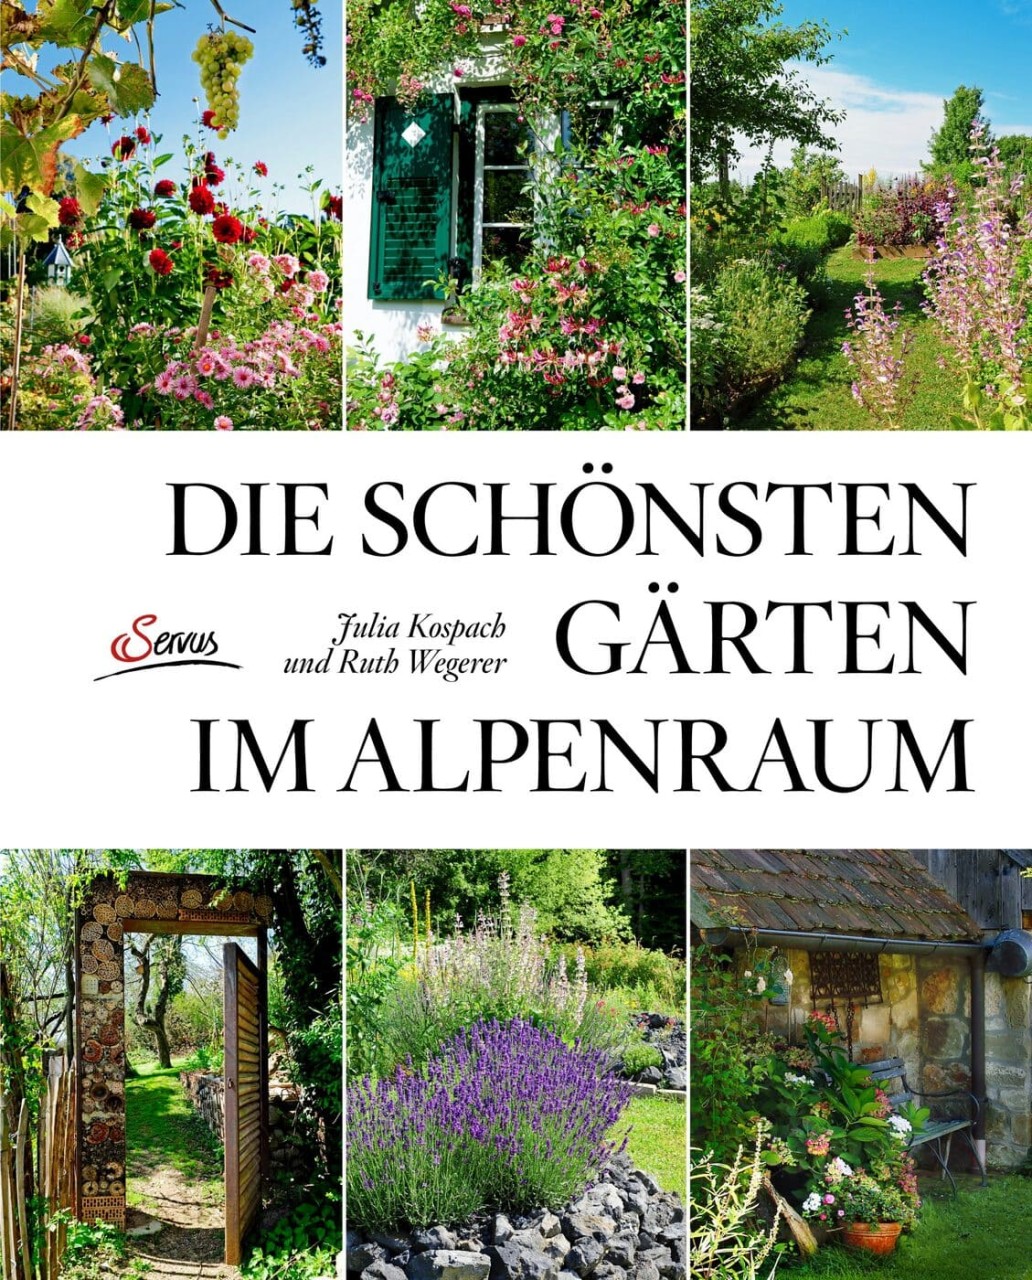 Die schönsten Gärten im Alpenraum von Servus Verlag